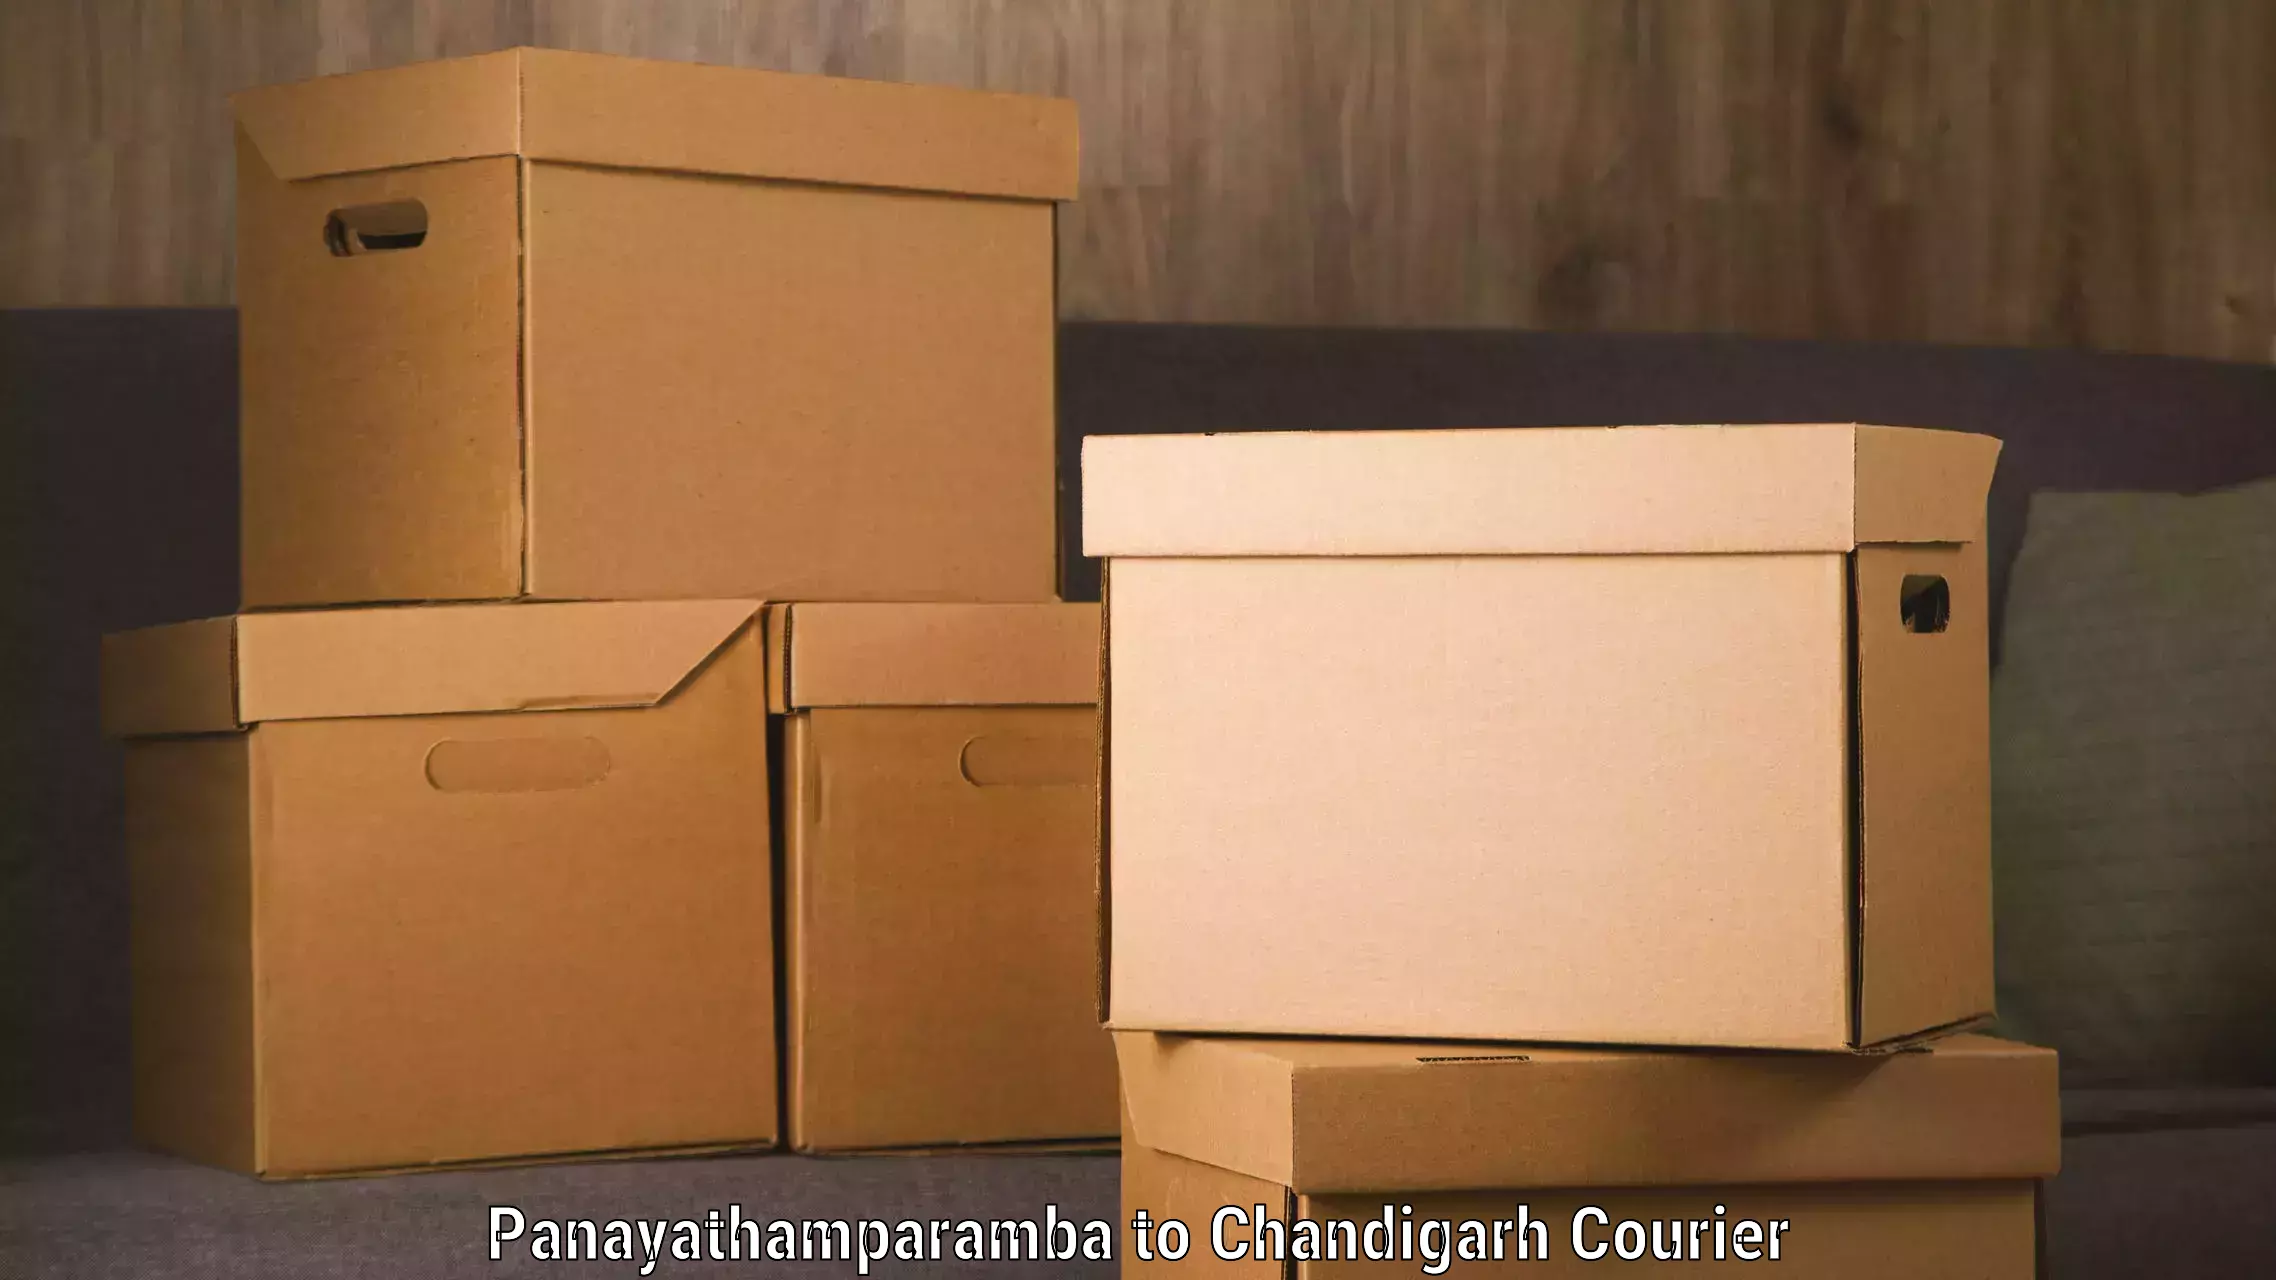 Advanced tracking systems Panayathamparamba to Chandigarh